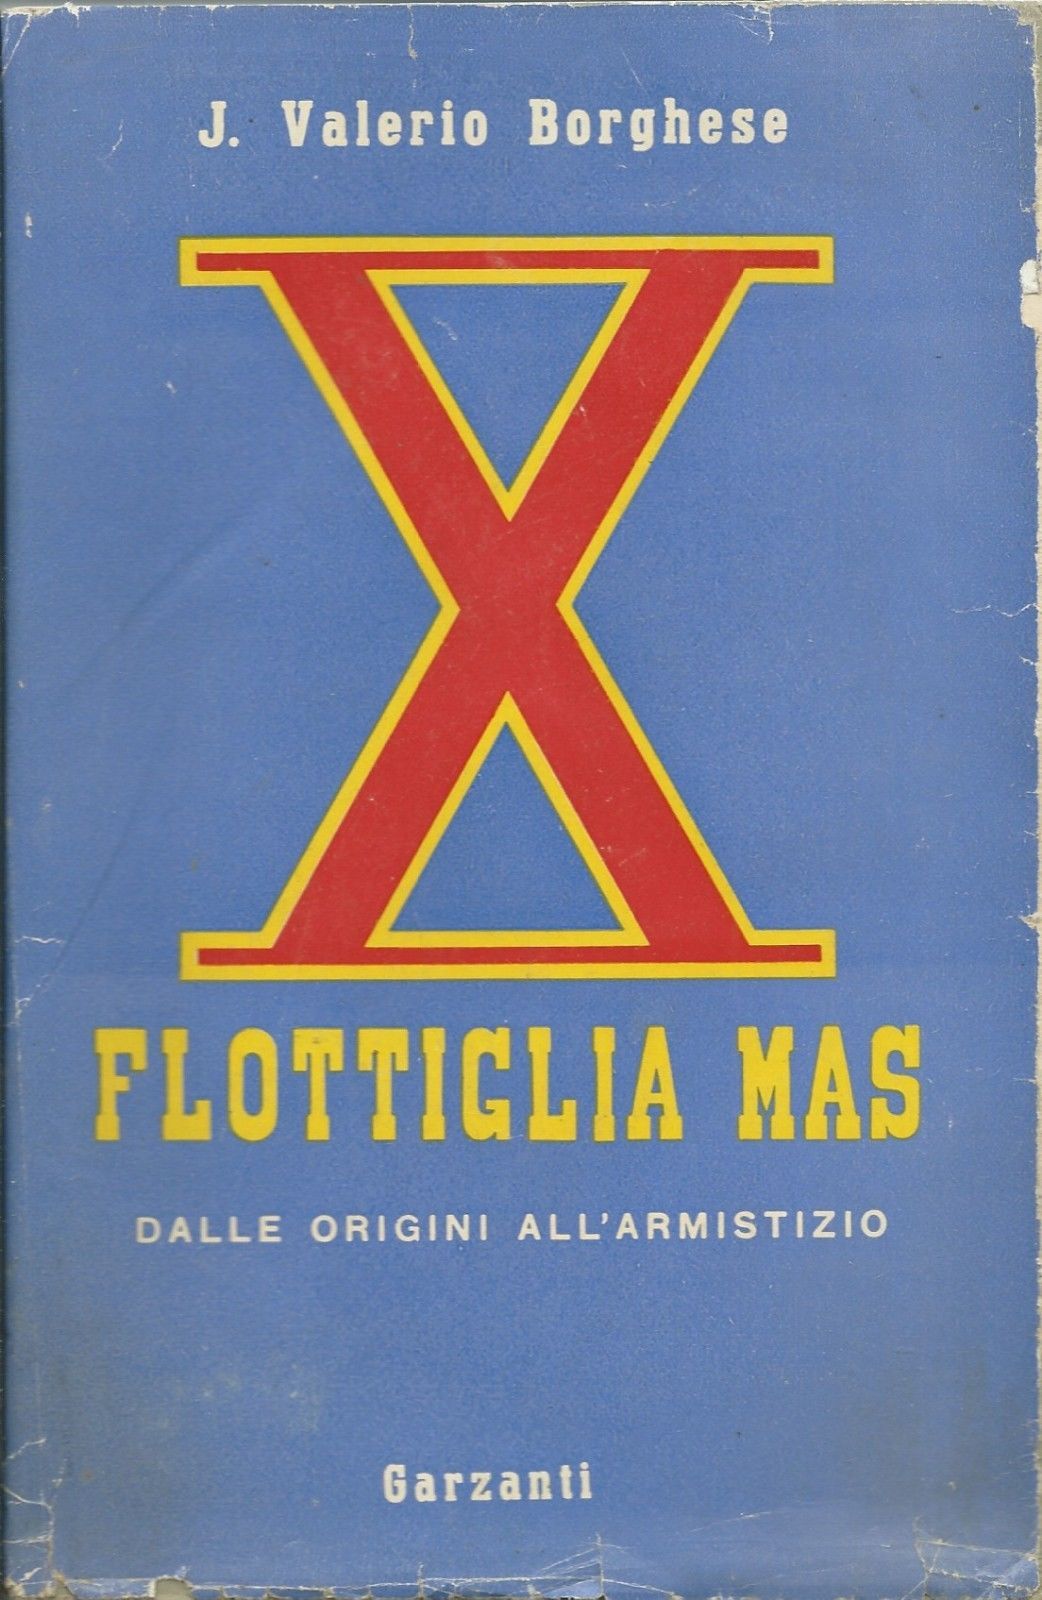 …su eBay c’è “X Flottiglia Mas” di Junio Valerio Borghese. Un’edizione costosa. Perché?